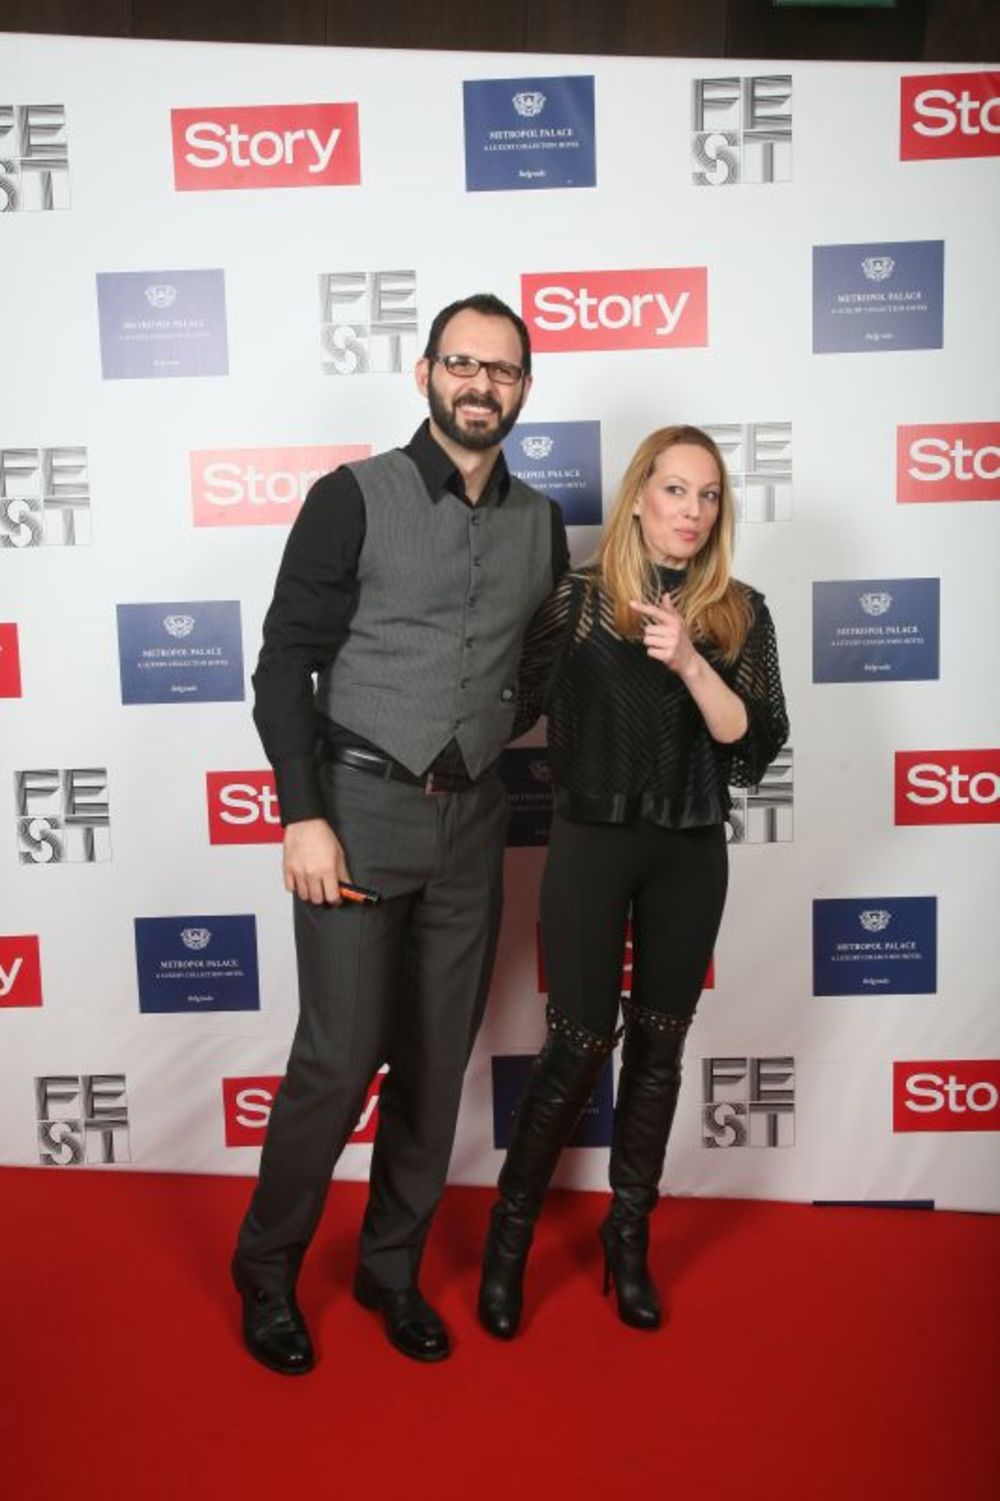 Večeras se u hotelu Metropol održava Story FEST party kojim se obeležava početak najvećeg domaćeg filmskog festivala. Pogledajte koje su se VIP zvanice iz sveta filma, showbussinesa i kulture prošetale crvenim tepihom na Story FEST partyju.